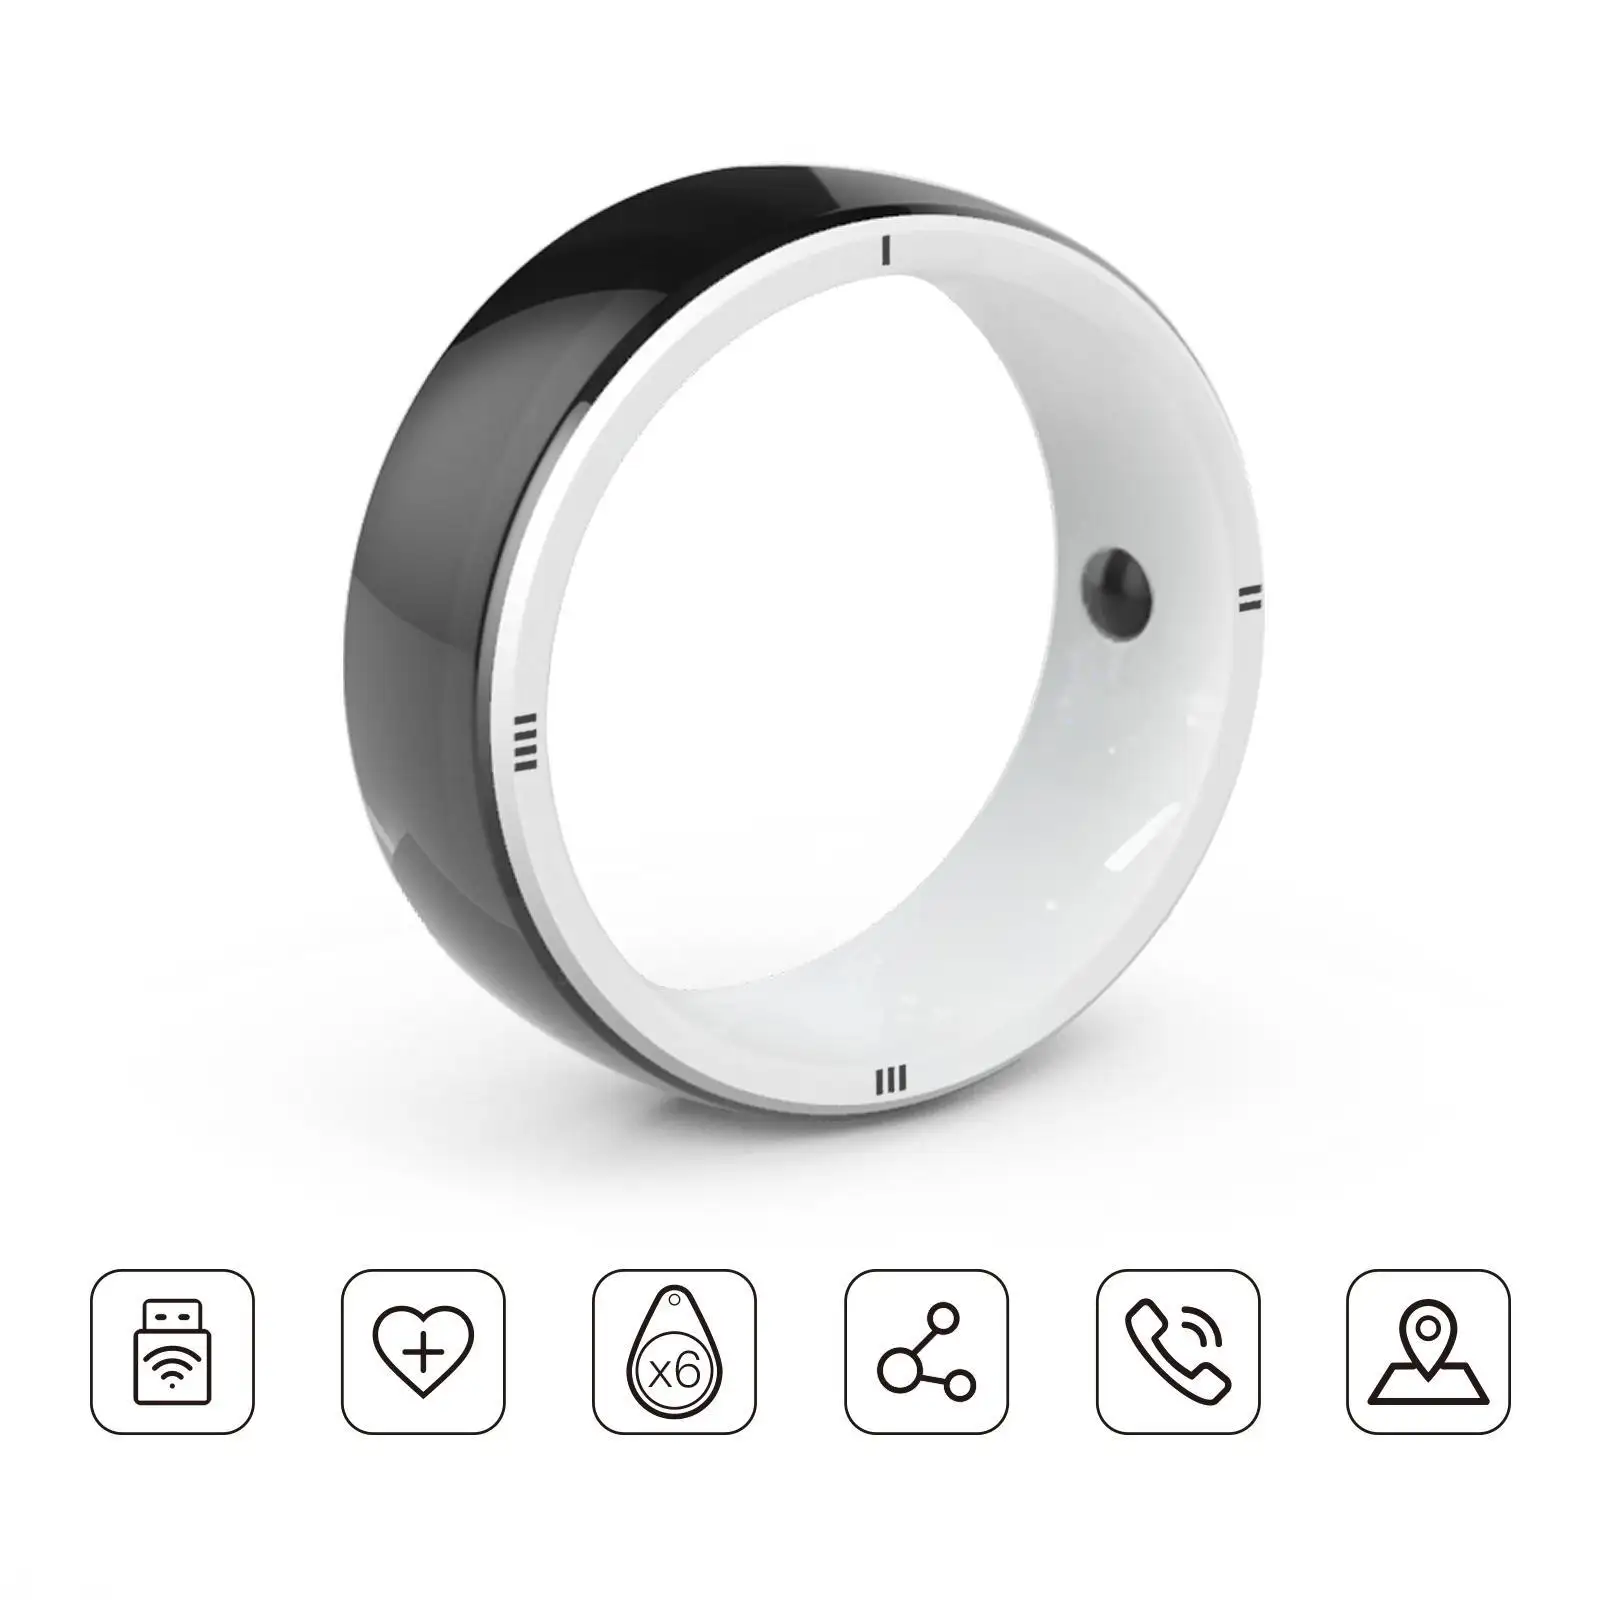 JAKCOM R5 स्मार्ट अंगूठी नई स्मार्ट अंगूठी सबसे अच्छा उपहार के साथ सस्ते सेल खुला मोबाइल फोन जीएसएम iphones प्रत्यक्ष आपूर्तिकर्ता डाइविंग